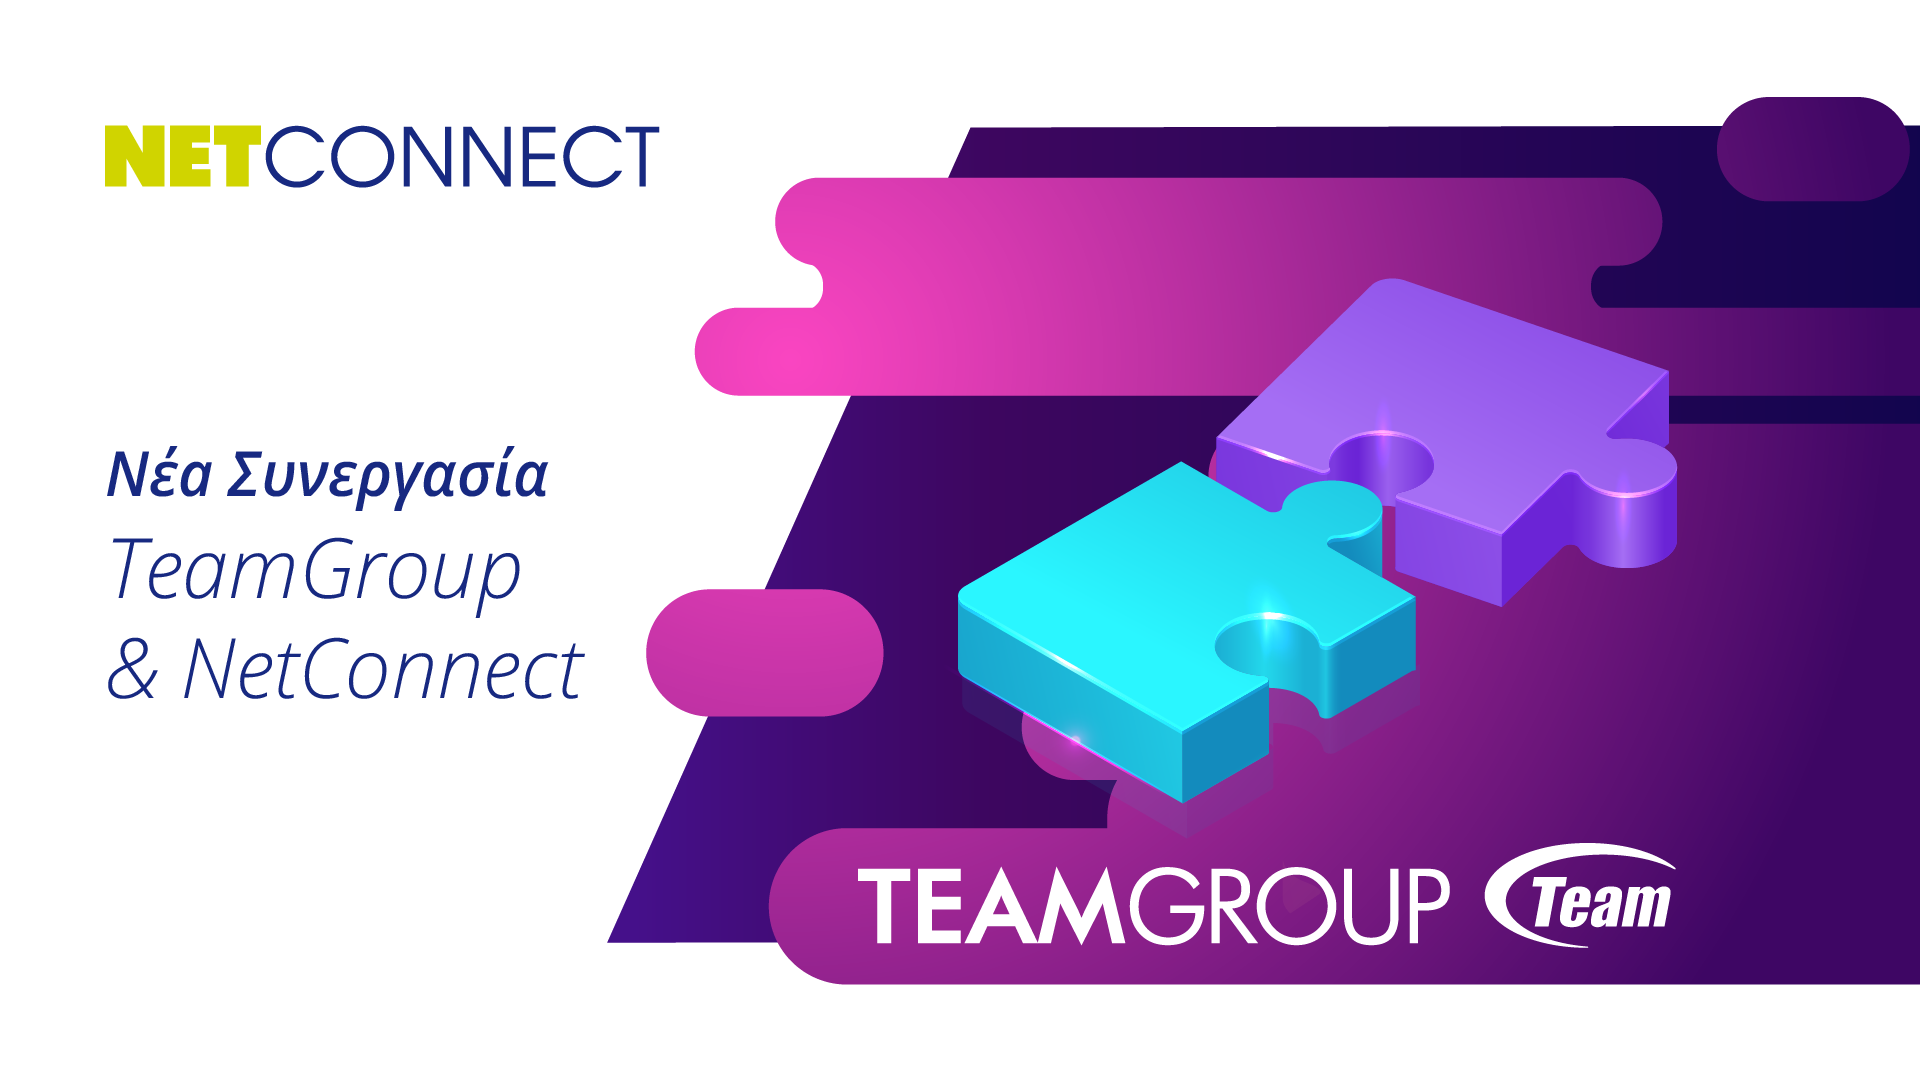 Νέa Συνεργασία ΤeamGroup & NetConnect